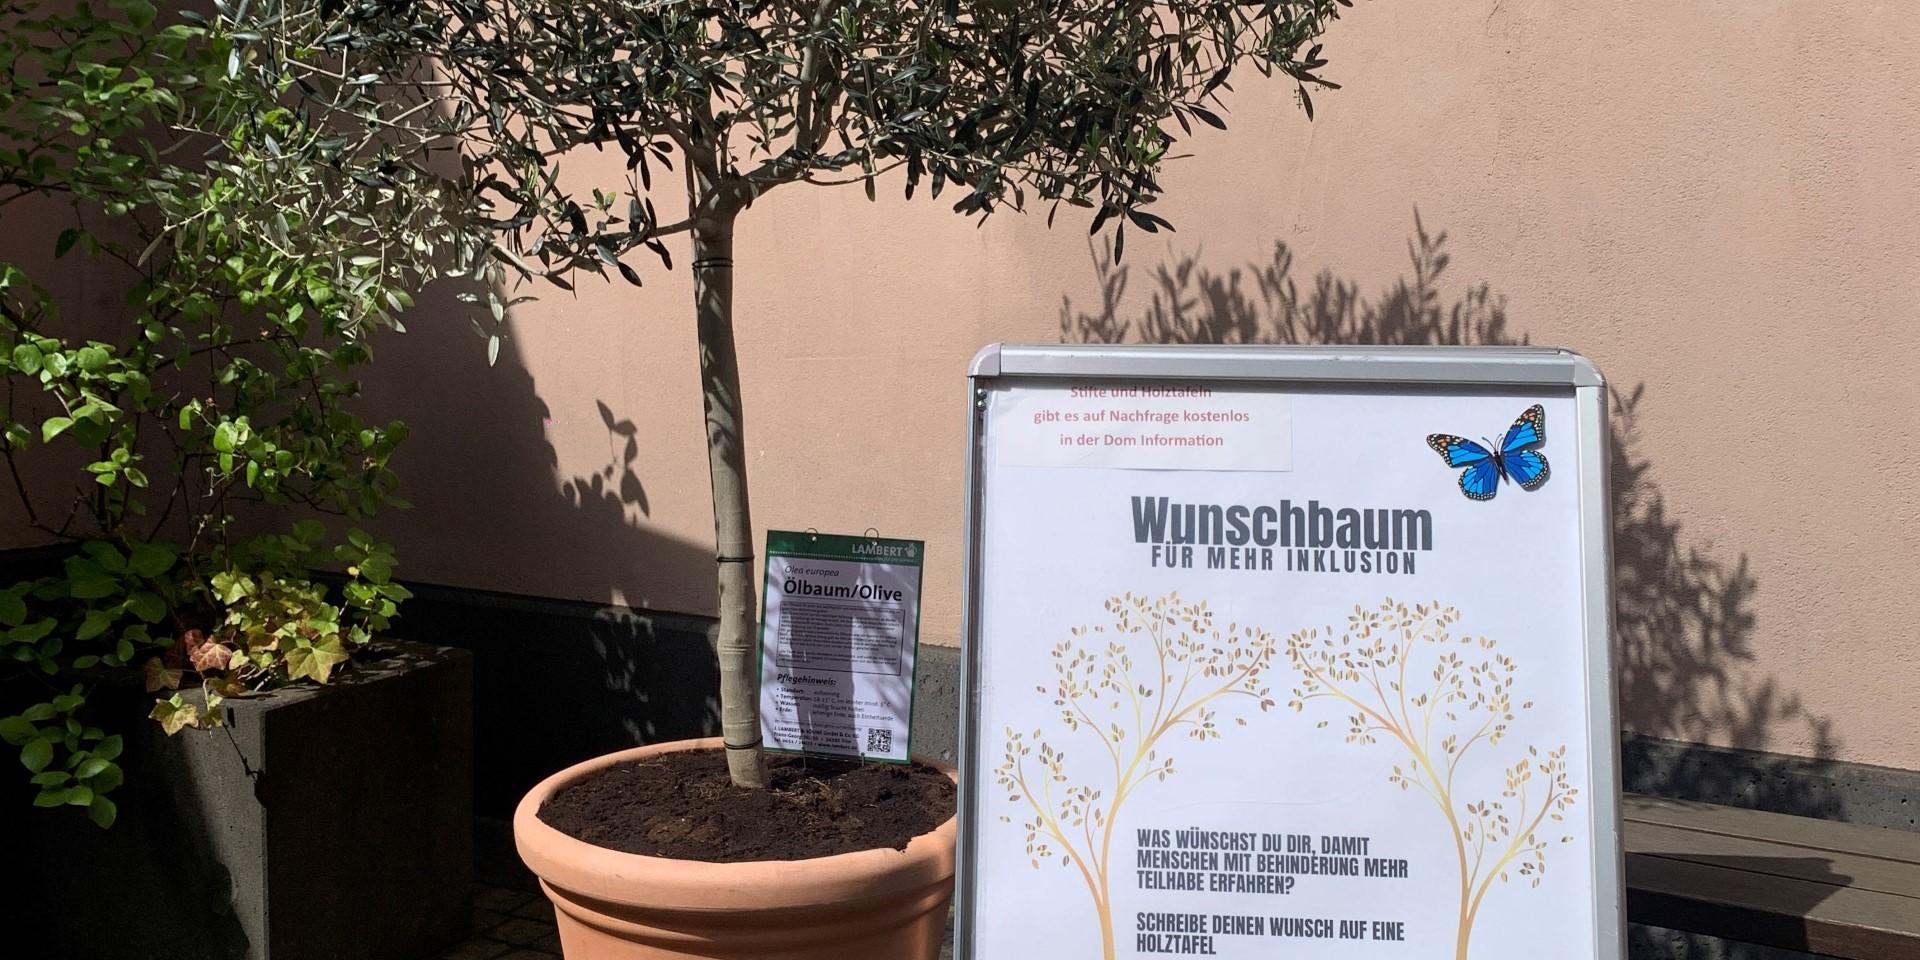 Der Wunschbaum wird im Innenhof der Dominformation und im Gartenzentrum LAMBERT zu finden sein.